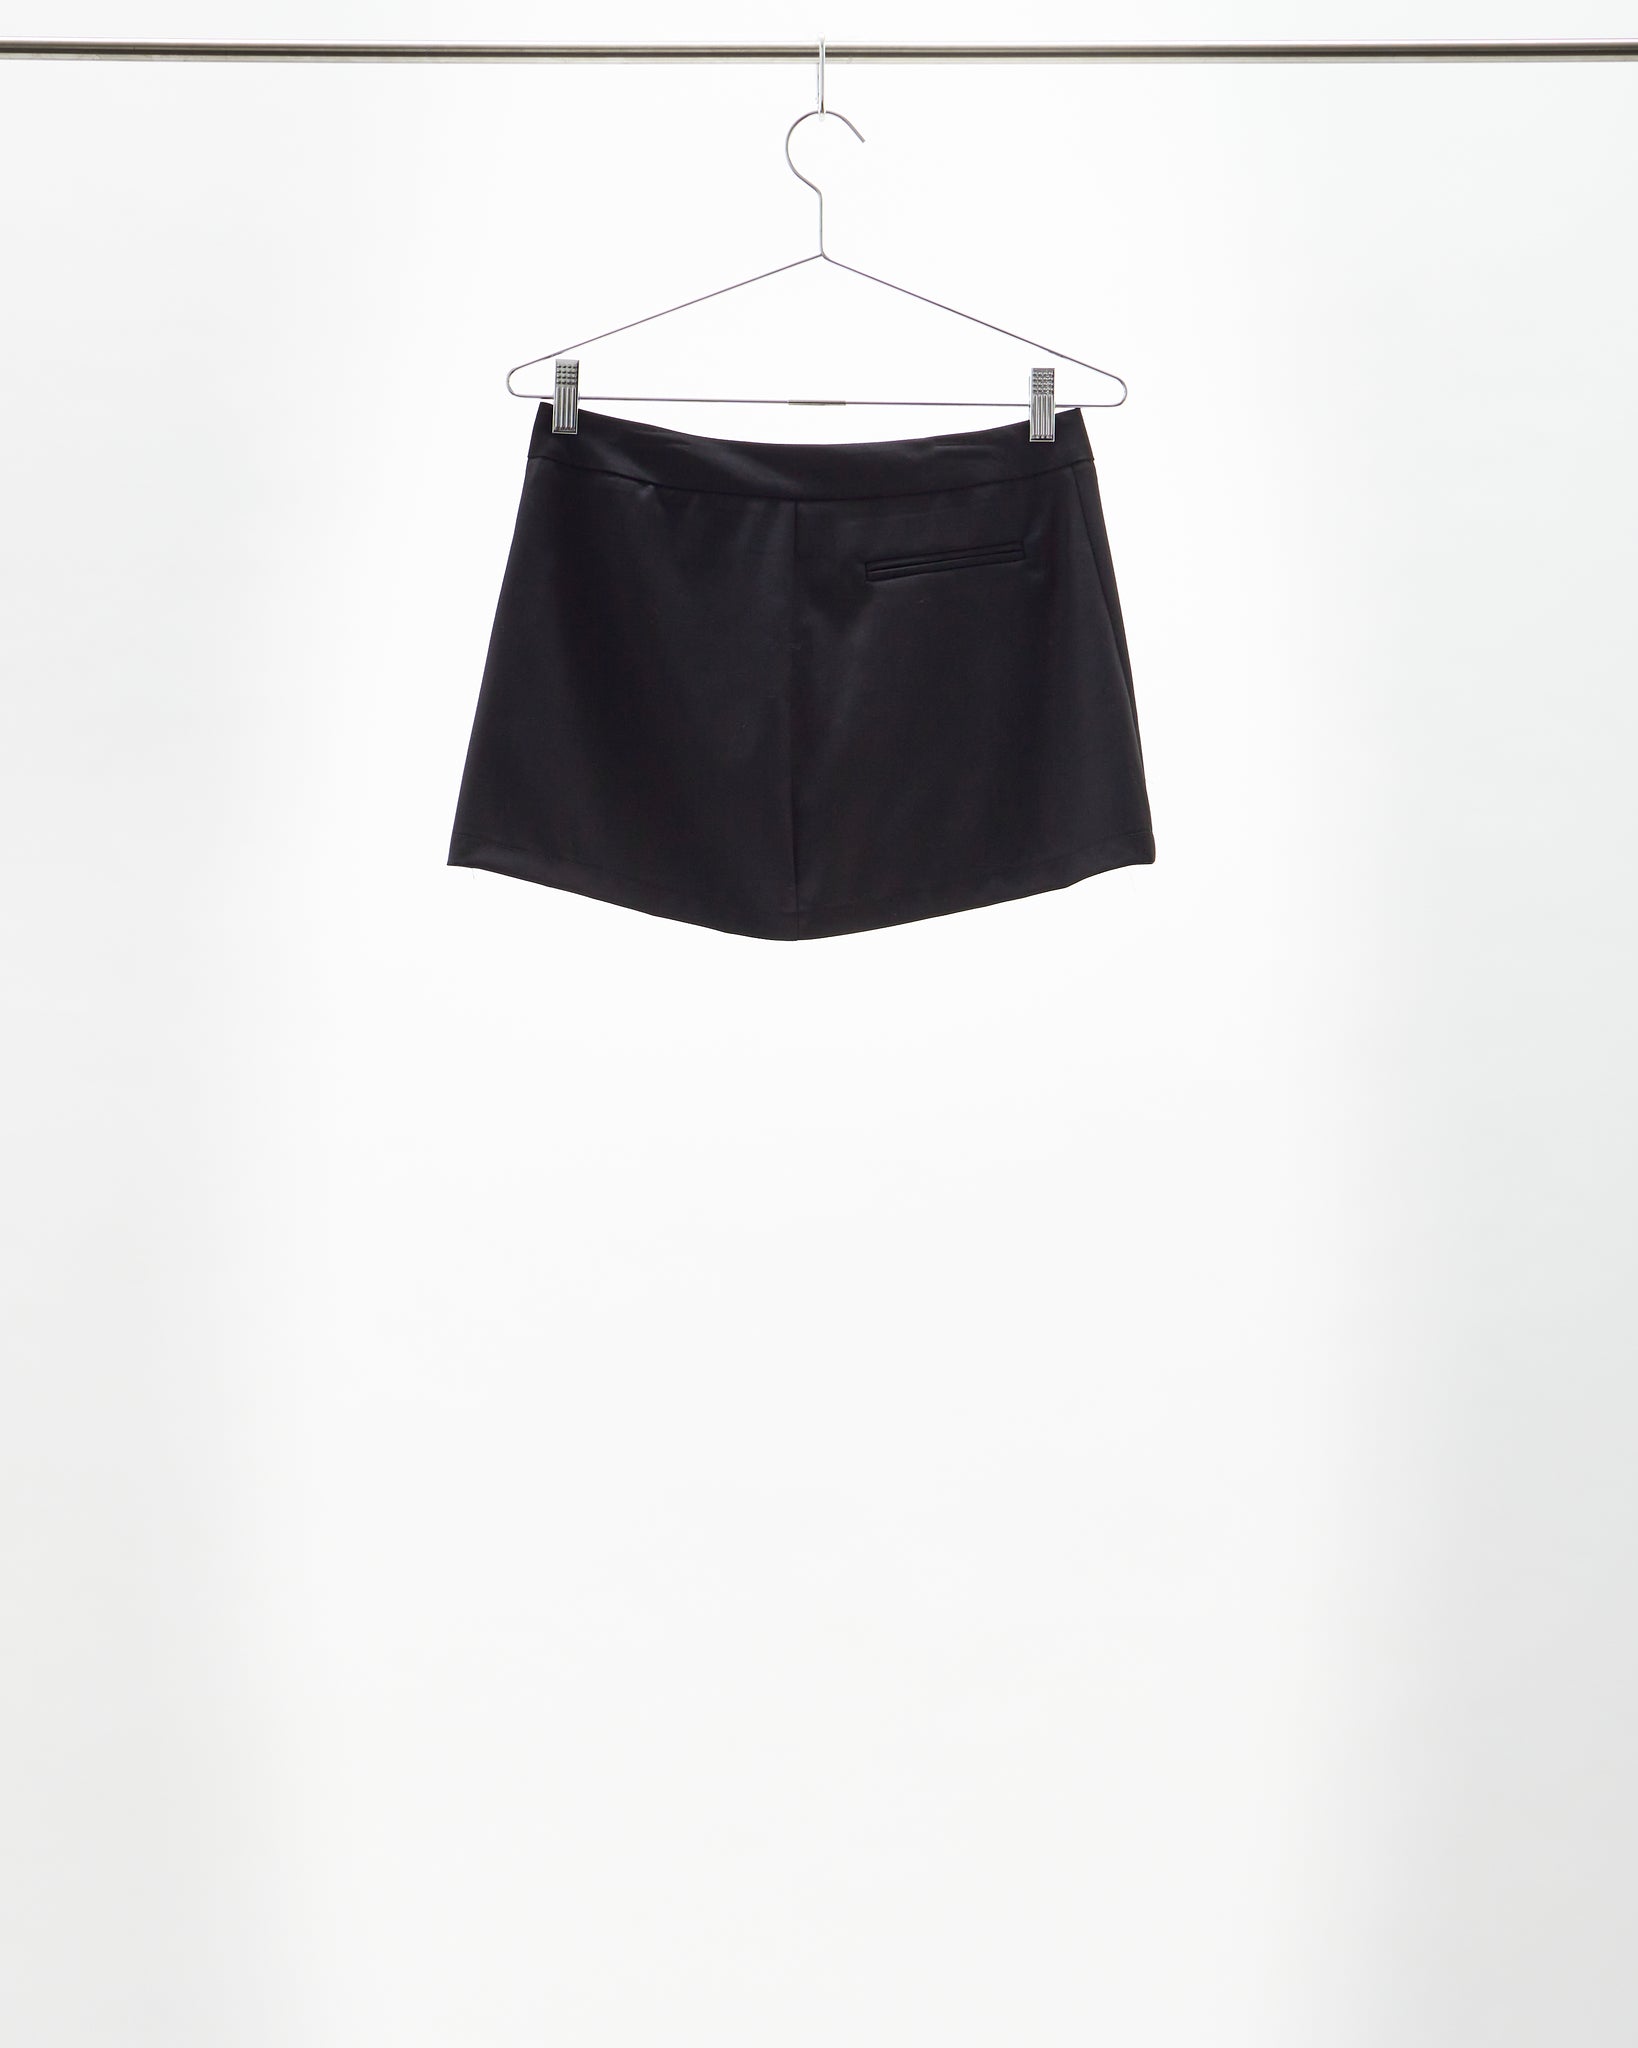 Kahe - Tailored Mini Skirt Black